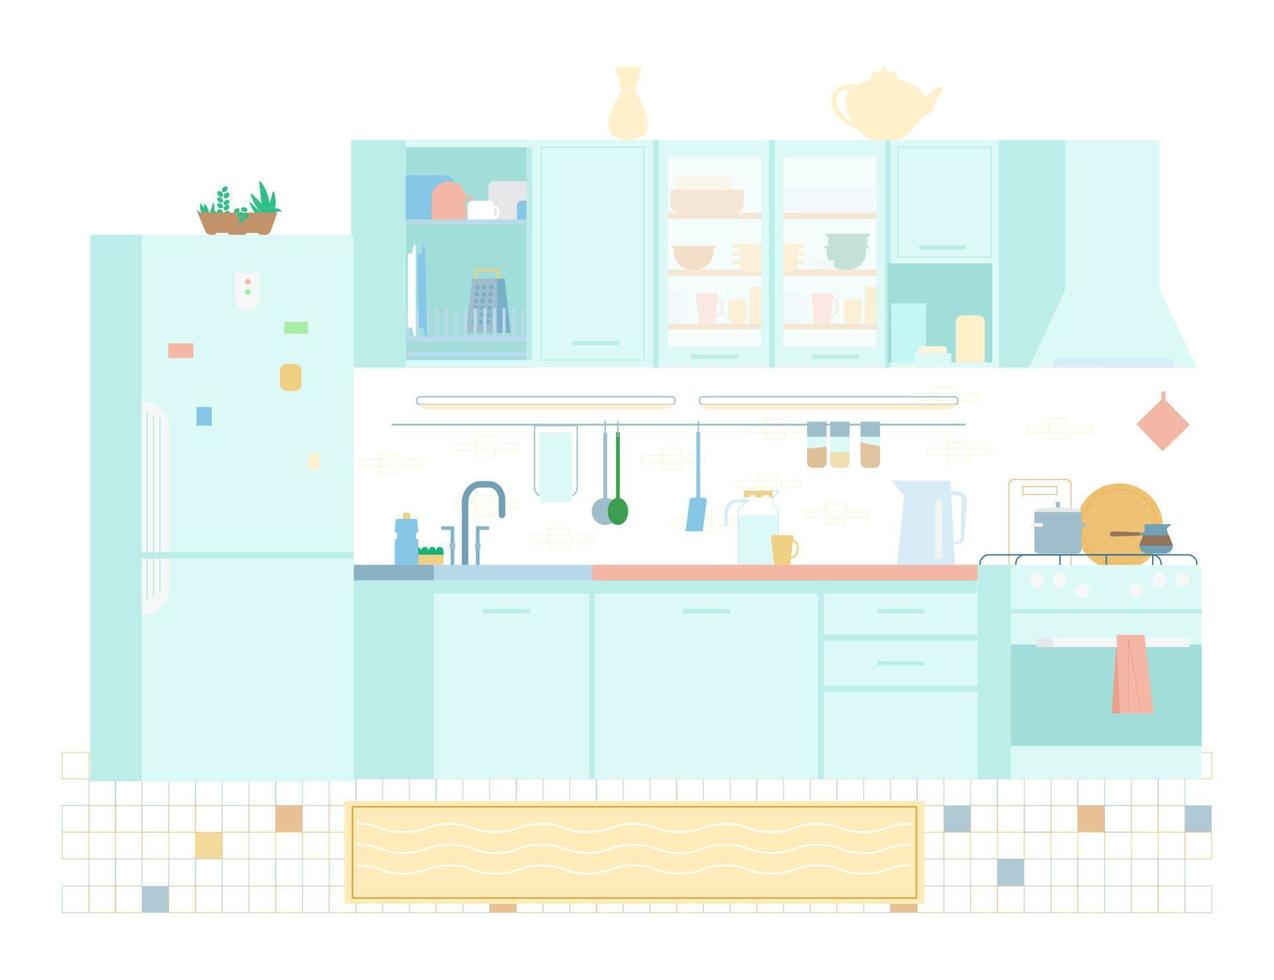 interior da cozinha em ilustração vetorial plana de cores pastel. móveis, fogão, utensílios, geladeira, prateleiras, pia, escorredor de pratos. vetor